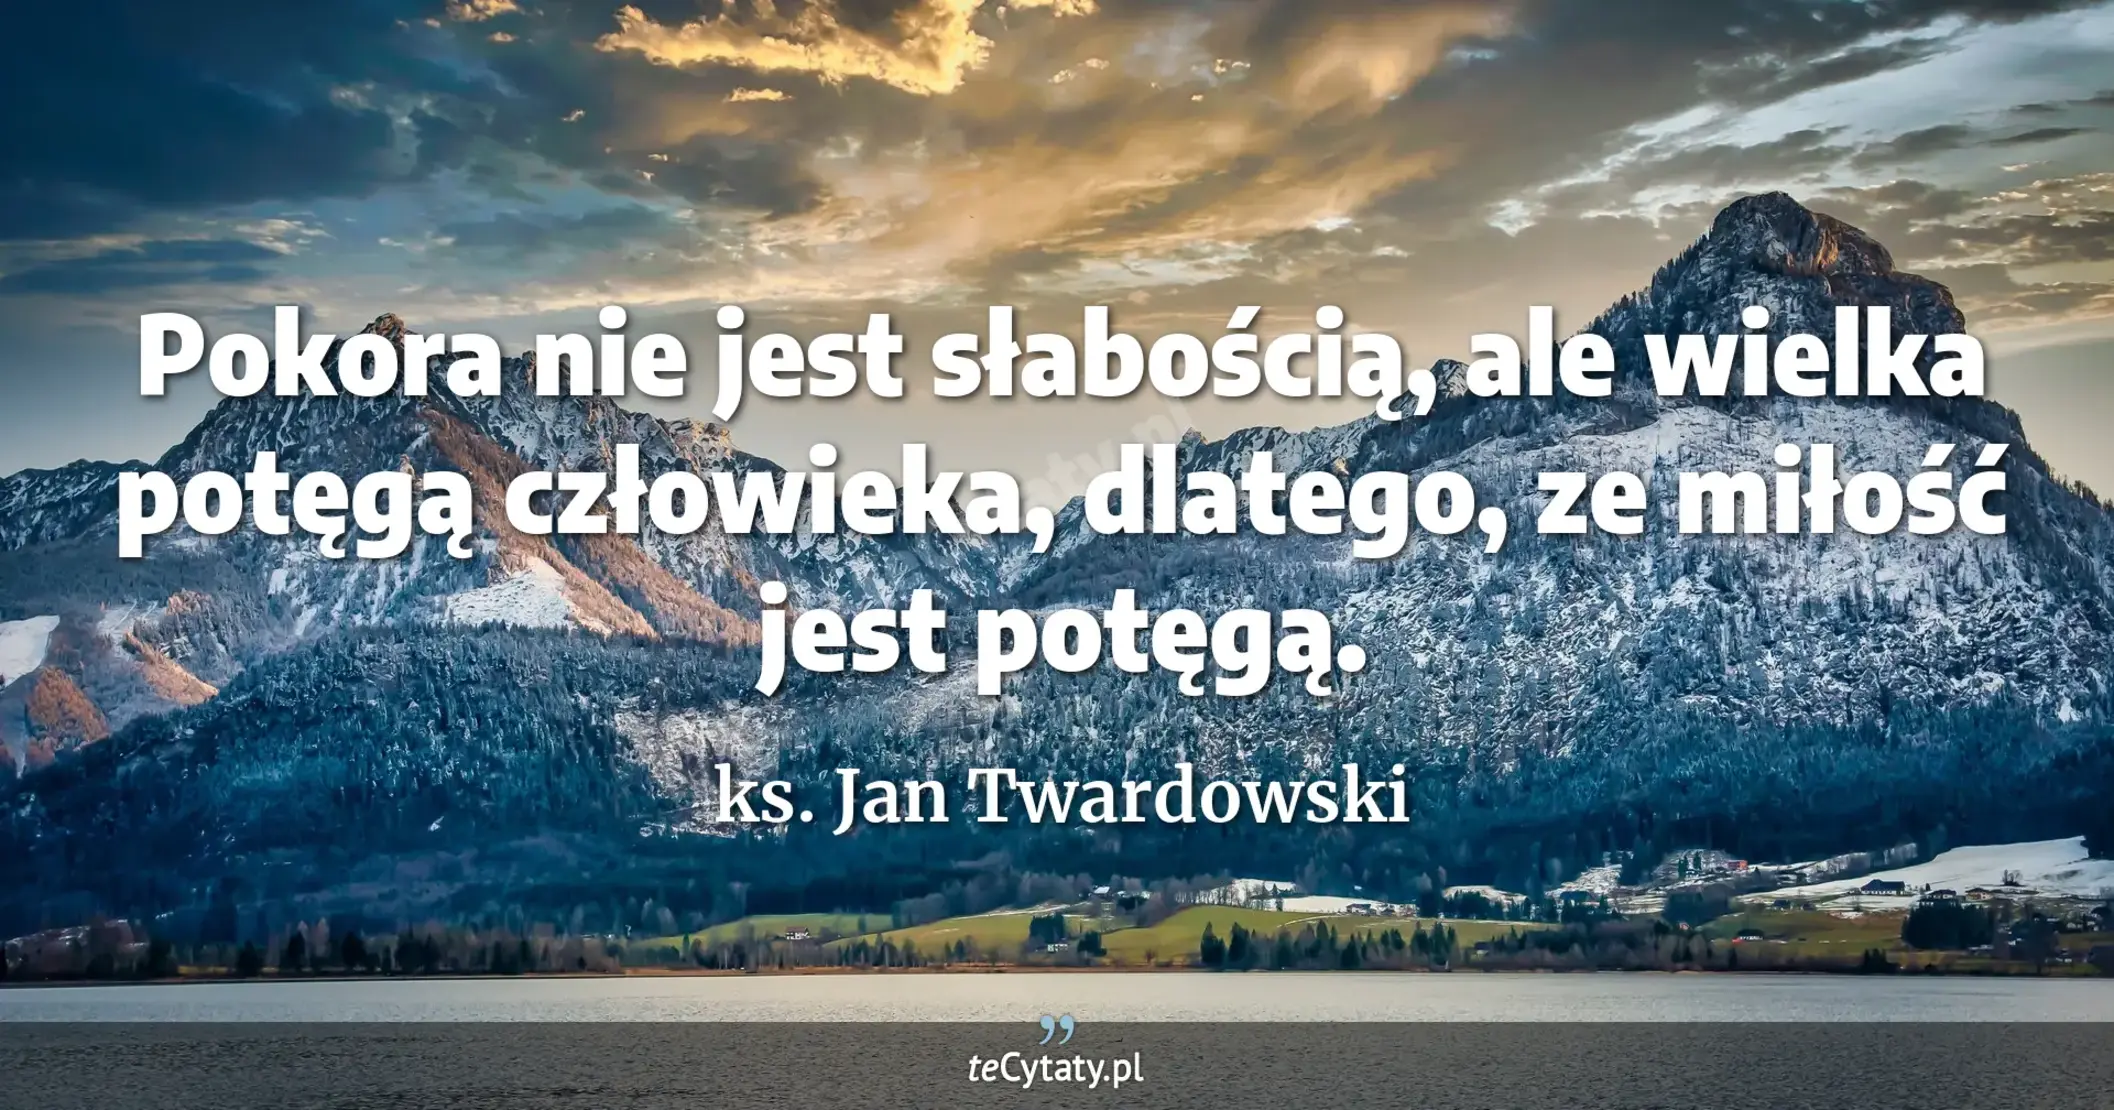 Pokora nie jest słabością, ale wielka potęgą człowieka, dlatego, ze miłość jest potęgą. - ks. Jan Twardowski